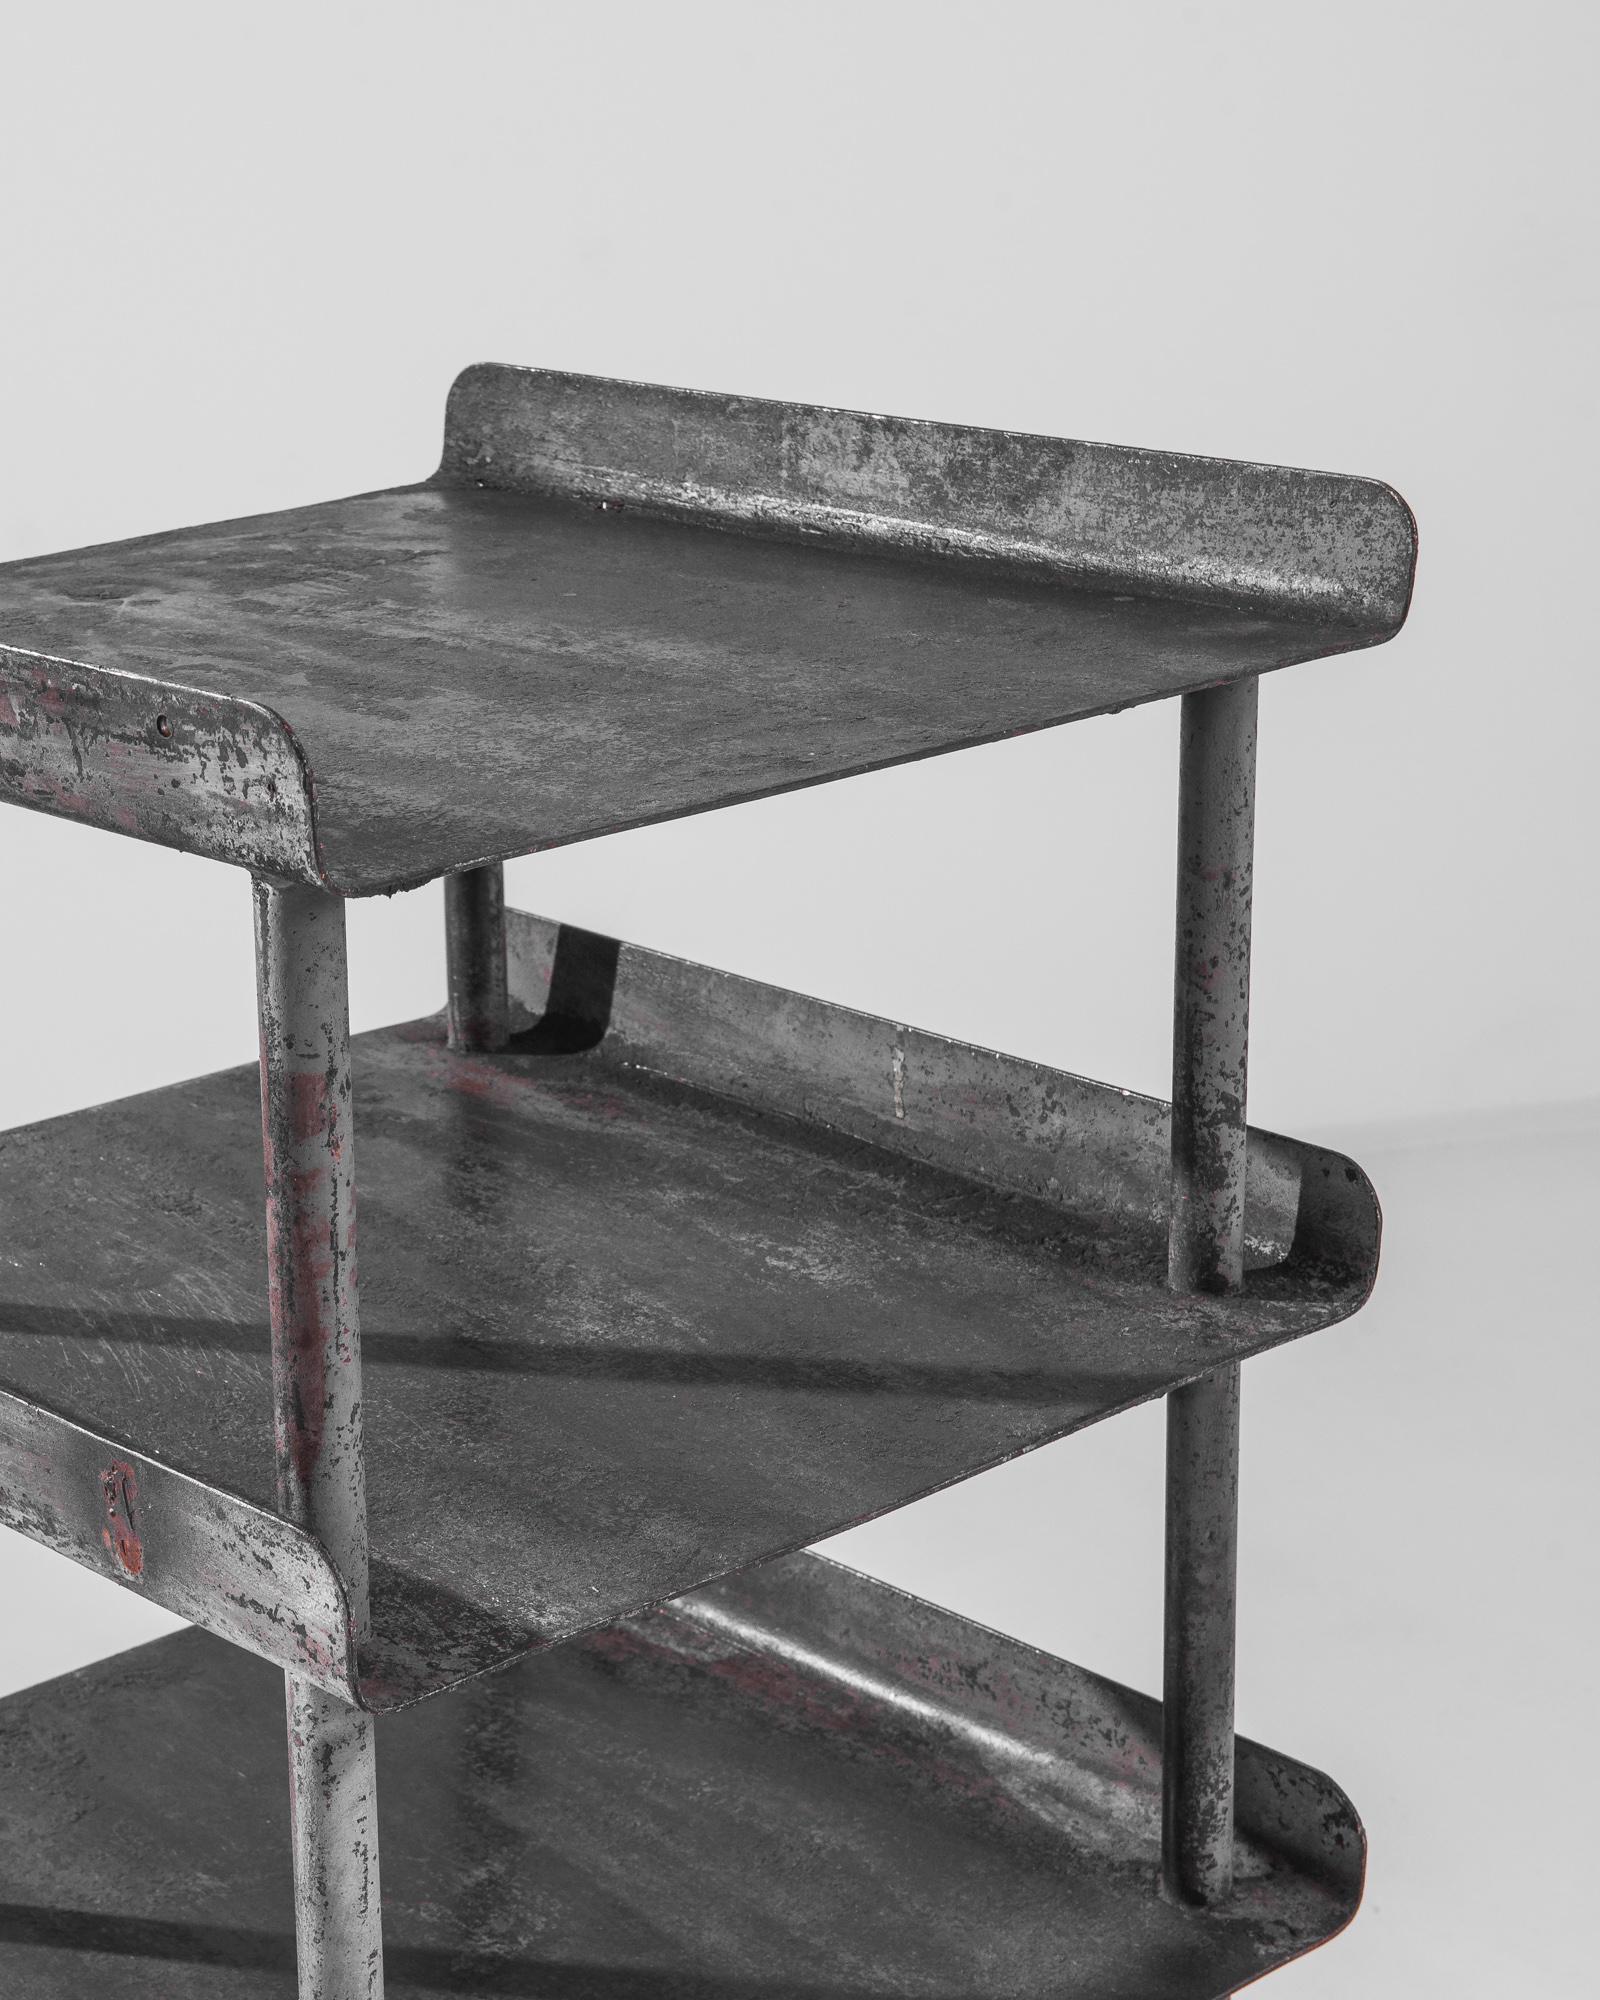 Ein Metallregal aus Tschechien, hergestellt um 1950. Dieses kurze Regal mit einer Höhe von etwa zwei Metern besteht aus drei Reihen geflügelter Böden, die durch dünne zylindrische Stützen voneinander getrennt sind und auf runden Füßen mit kurzen